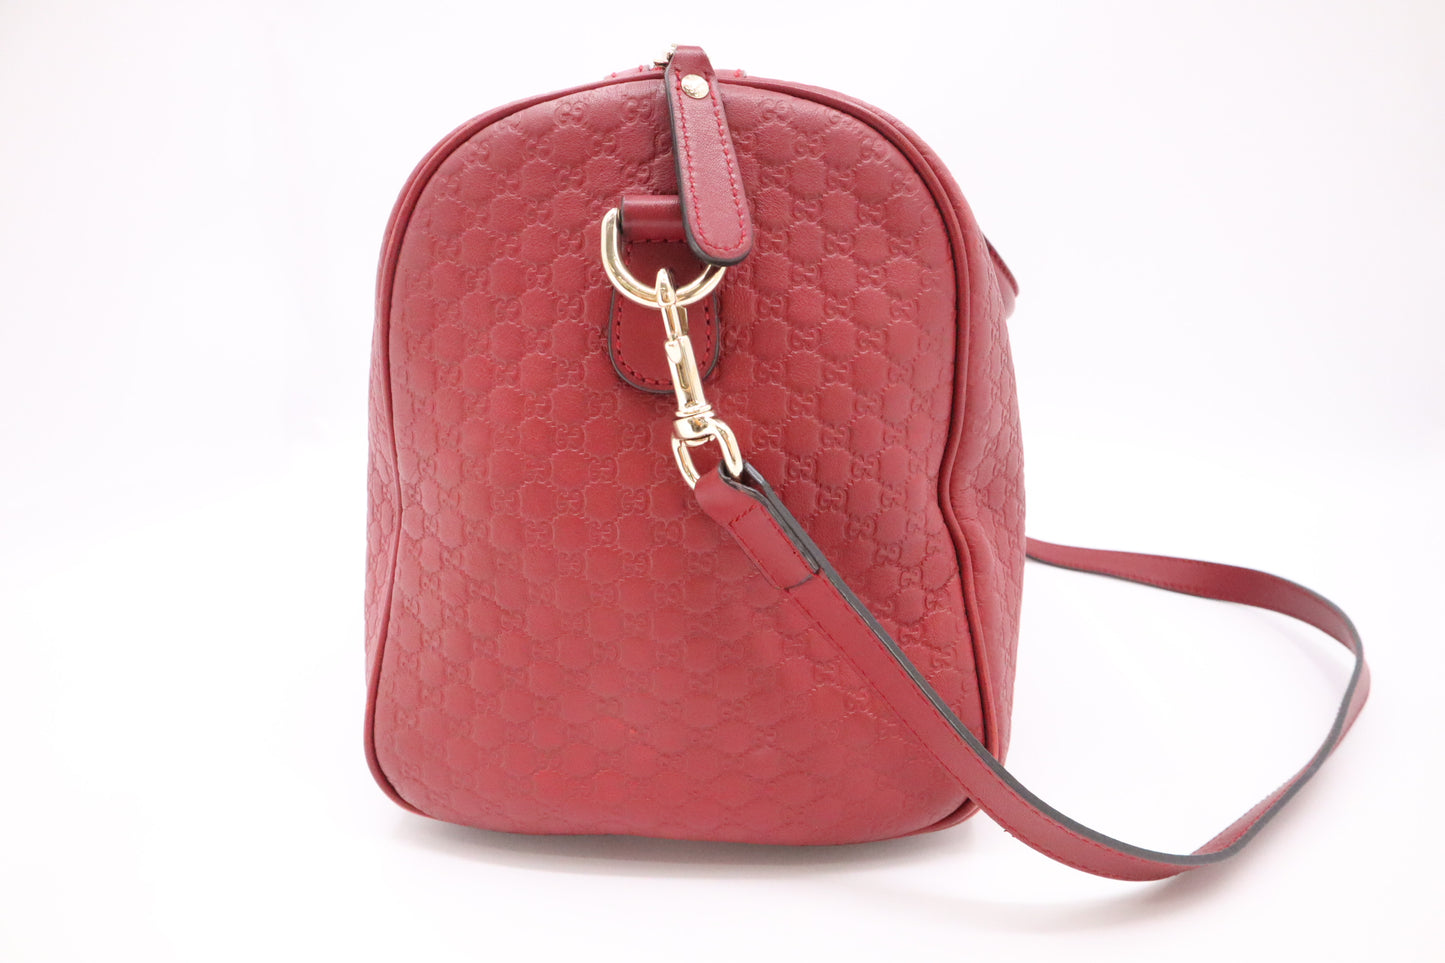 Gucci Boston Bag in Red Micro Guccissima Leather